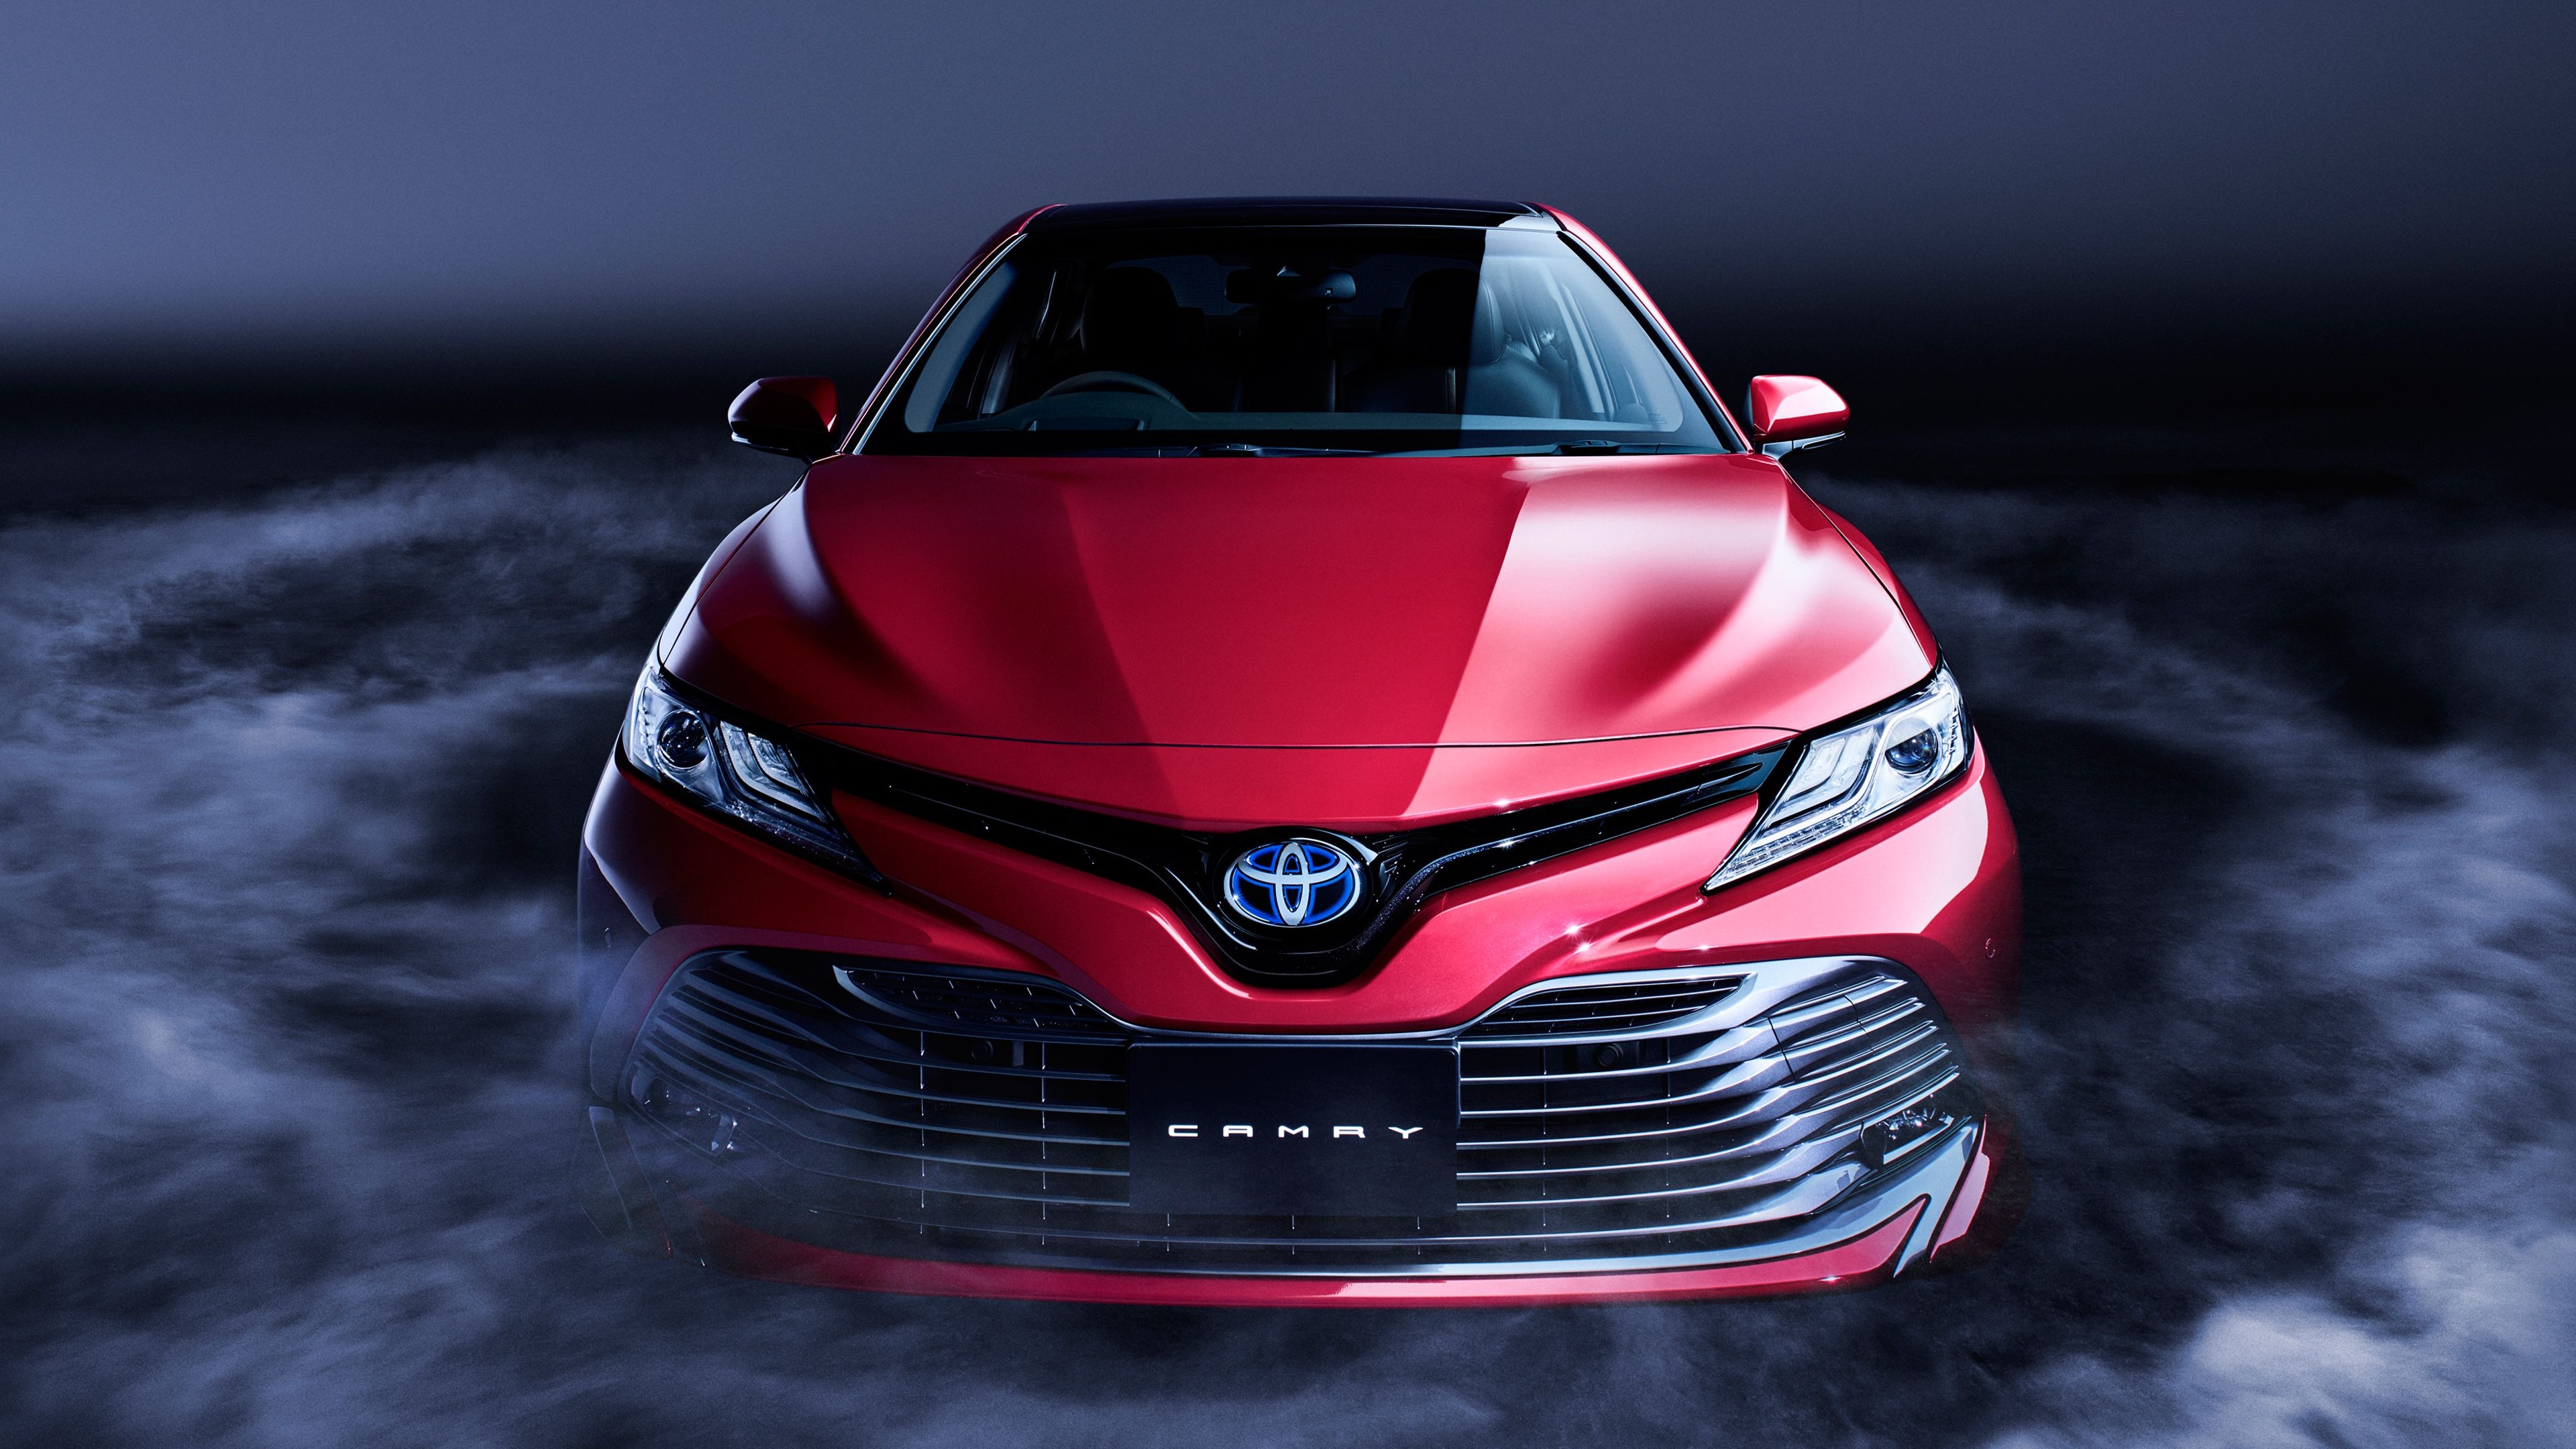 Toyota Camry Hybrid, Impressive wallpapers, Automotive backgrounds, 3840x2160 4K Desktop